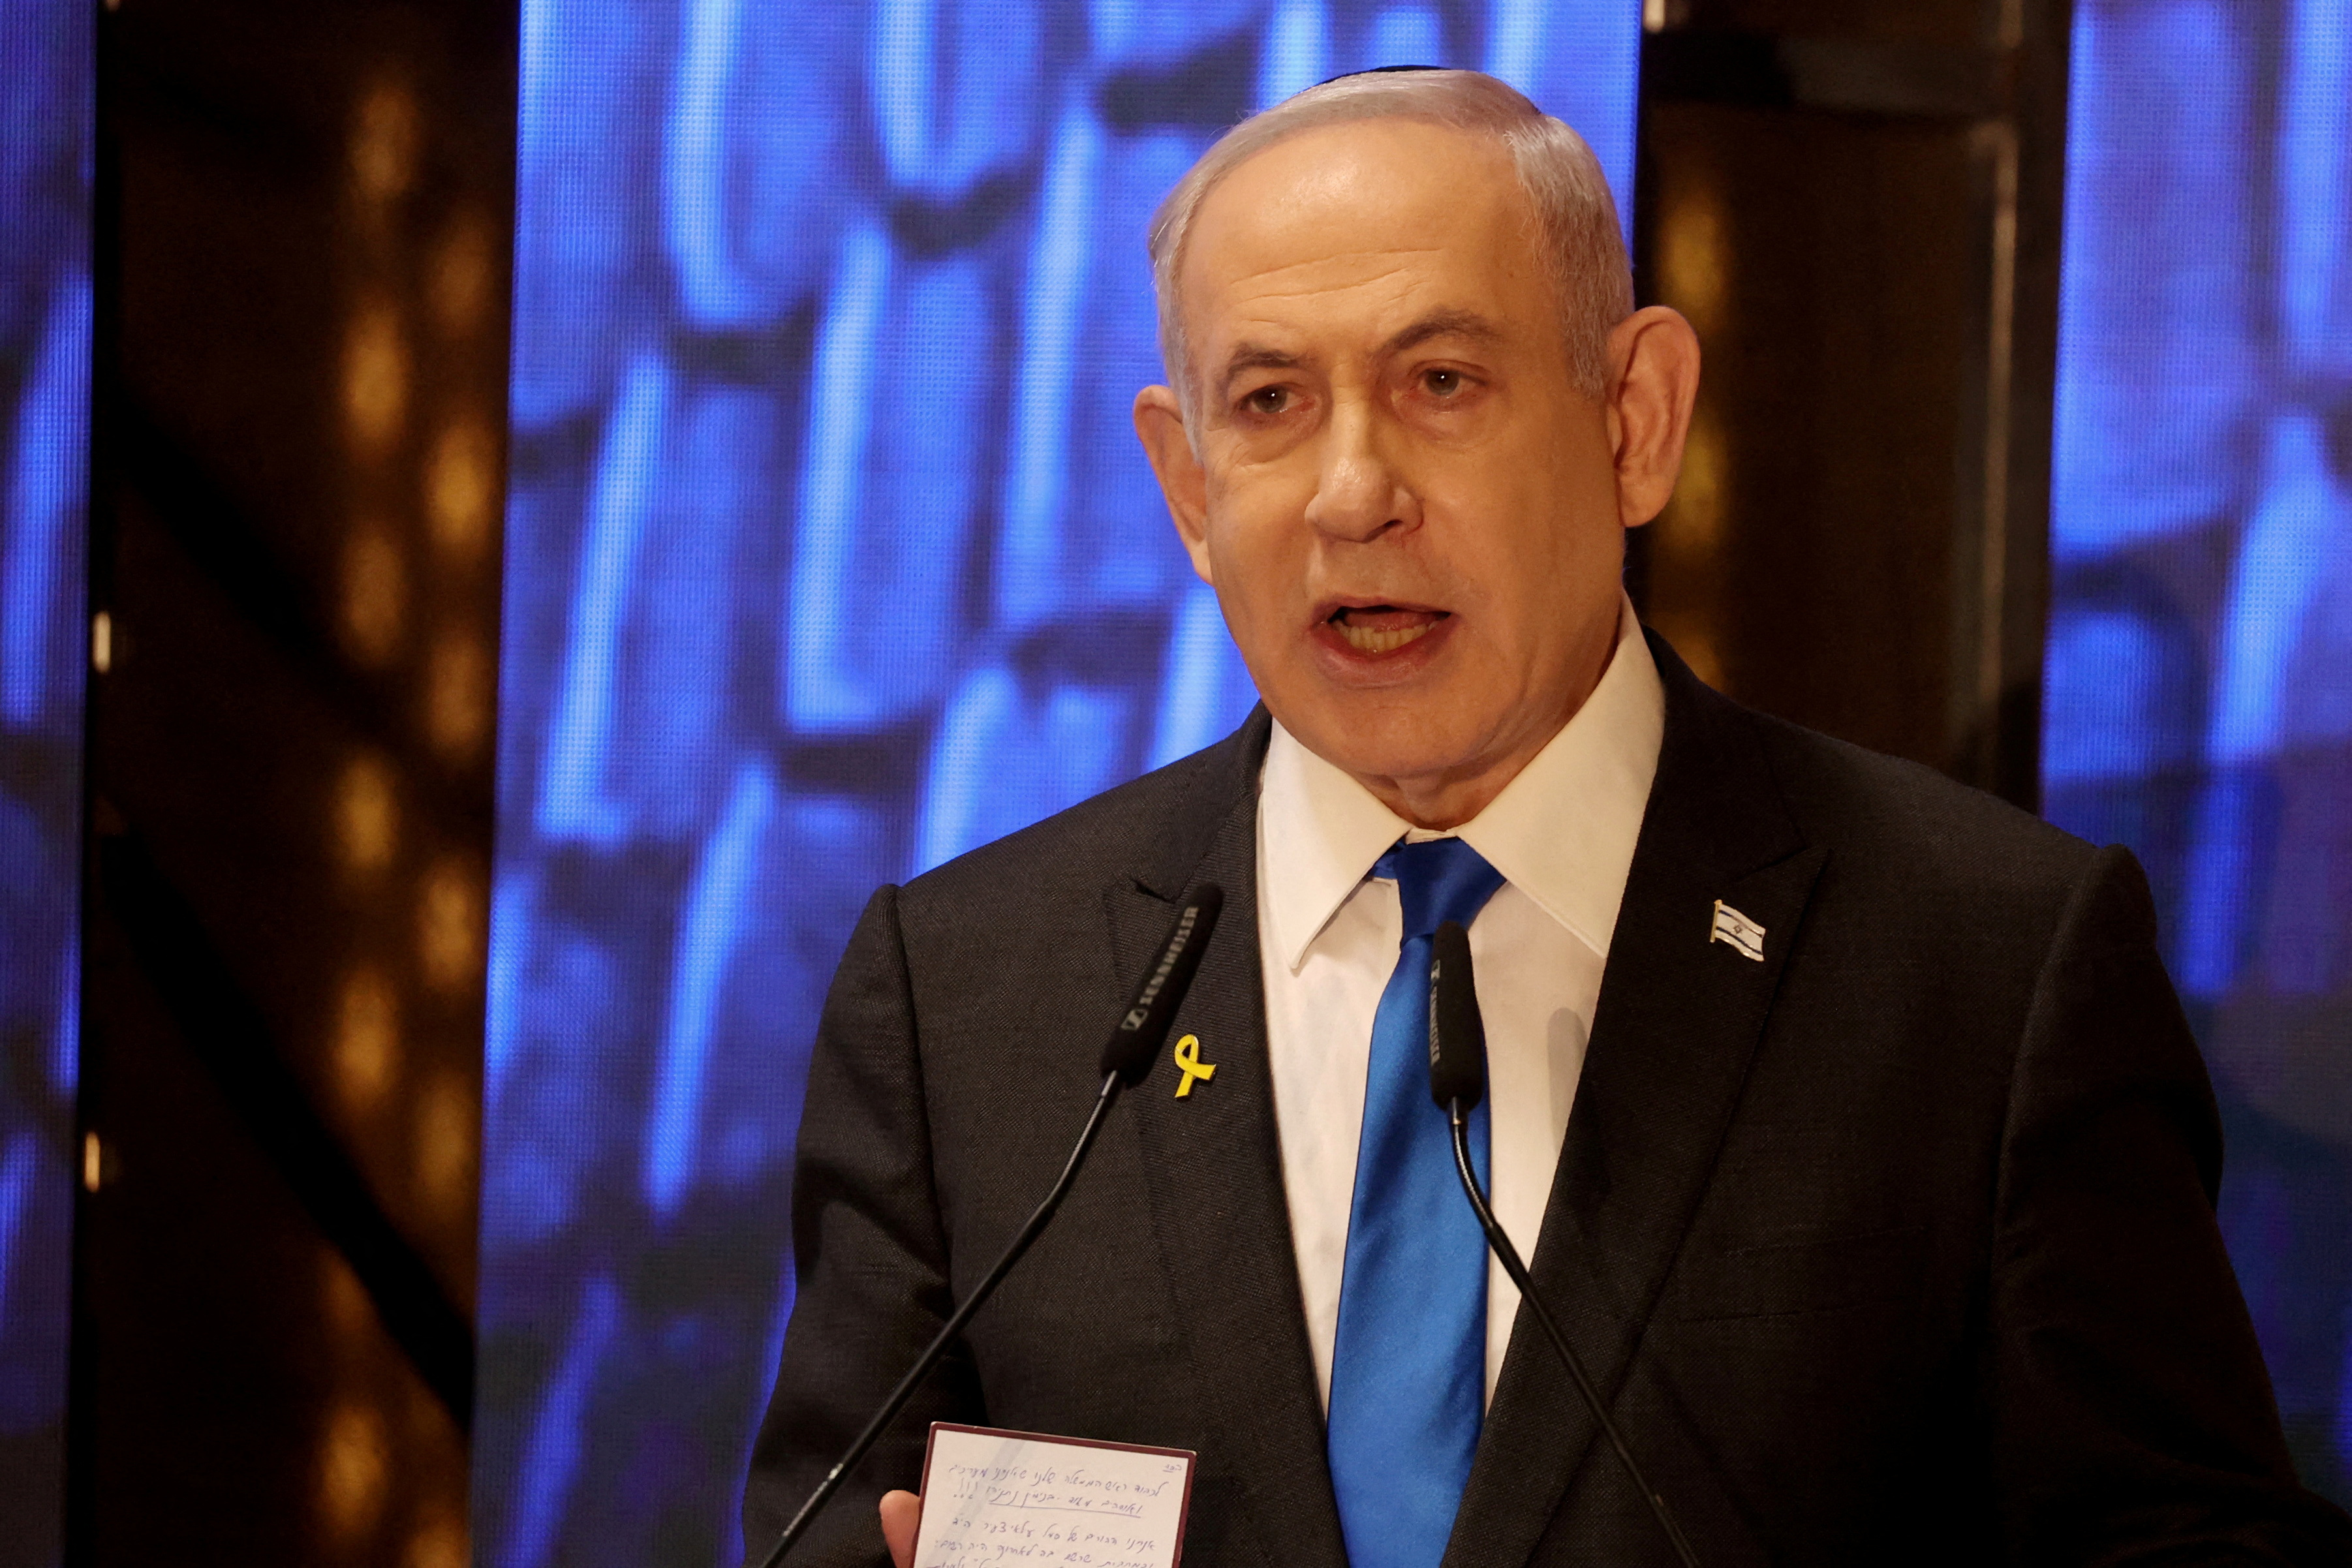 イスラエル首相、米議会で演説へ　「戦争の真実」伝達と表明